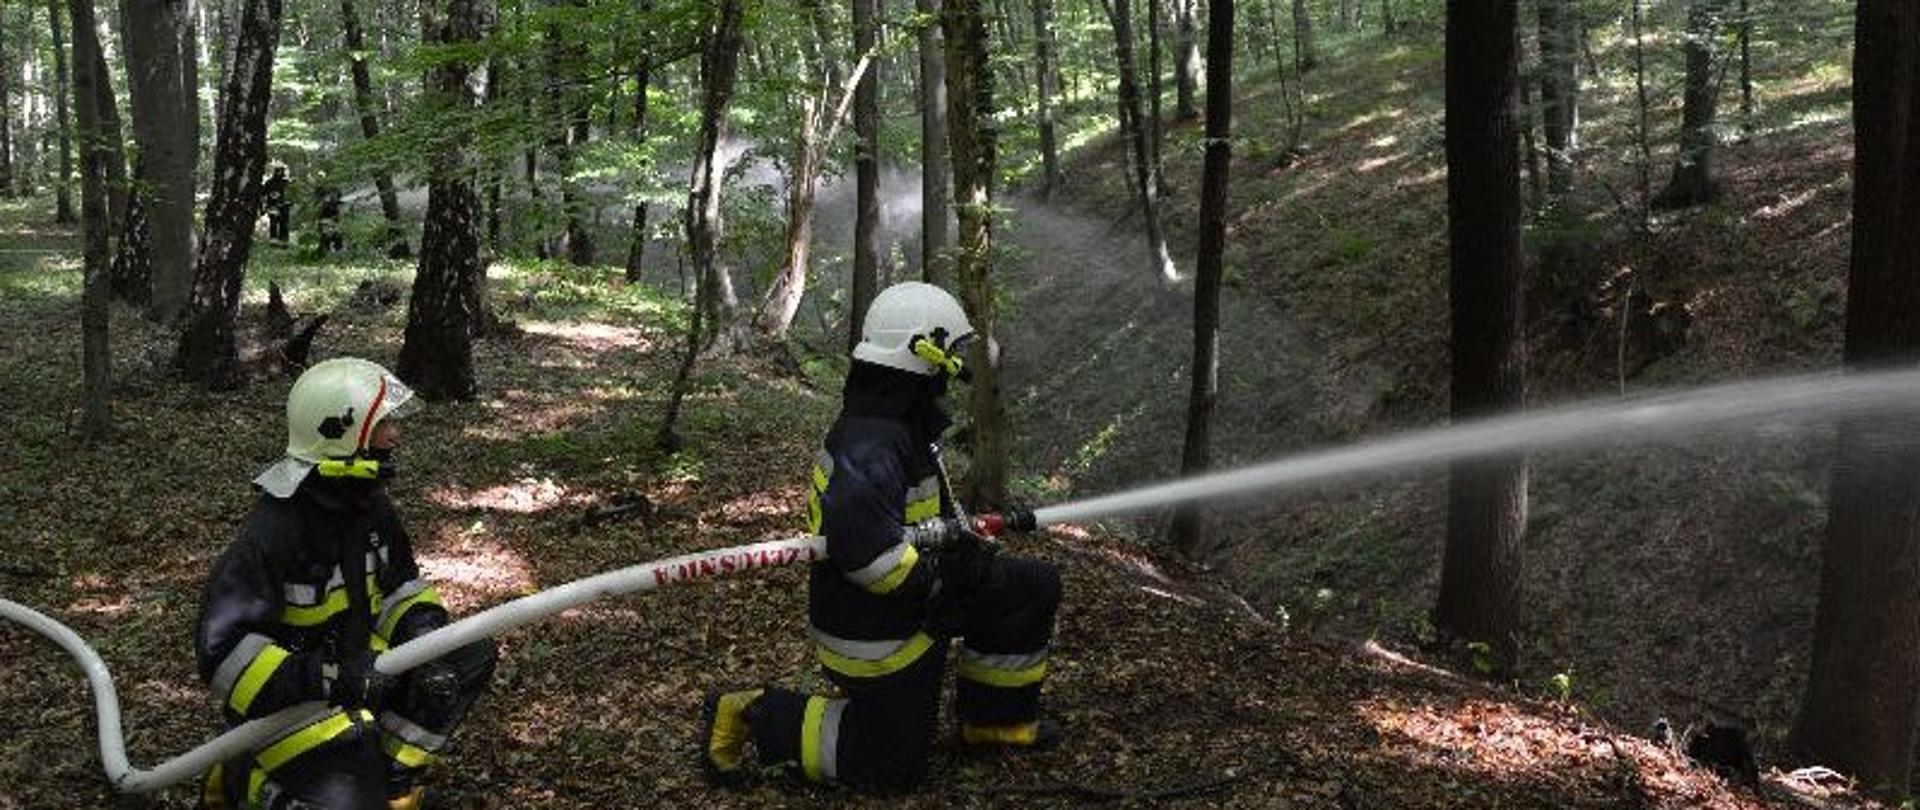 Na zdjęciu dwóch strażaków gaszących (symulujących) pożar lasu. Jeden przytrzymuje linię wężową, zaś drugi trzyma w ręku prądownice i kieruje prądem wody na ogień